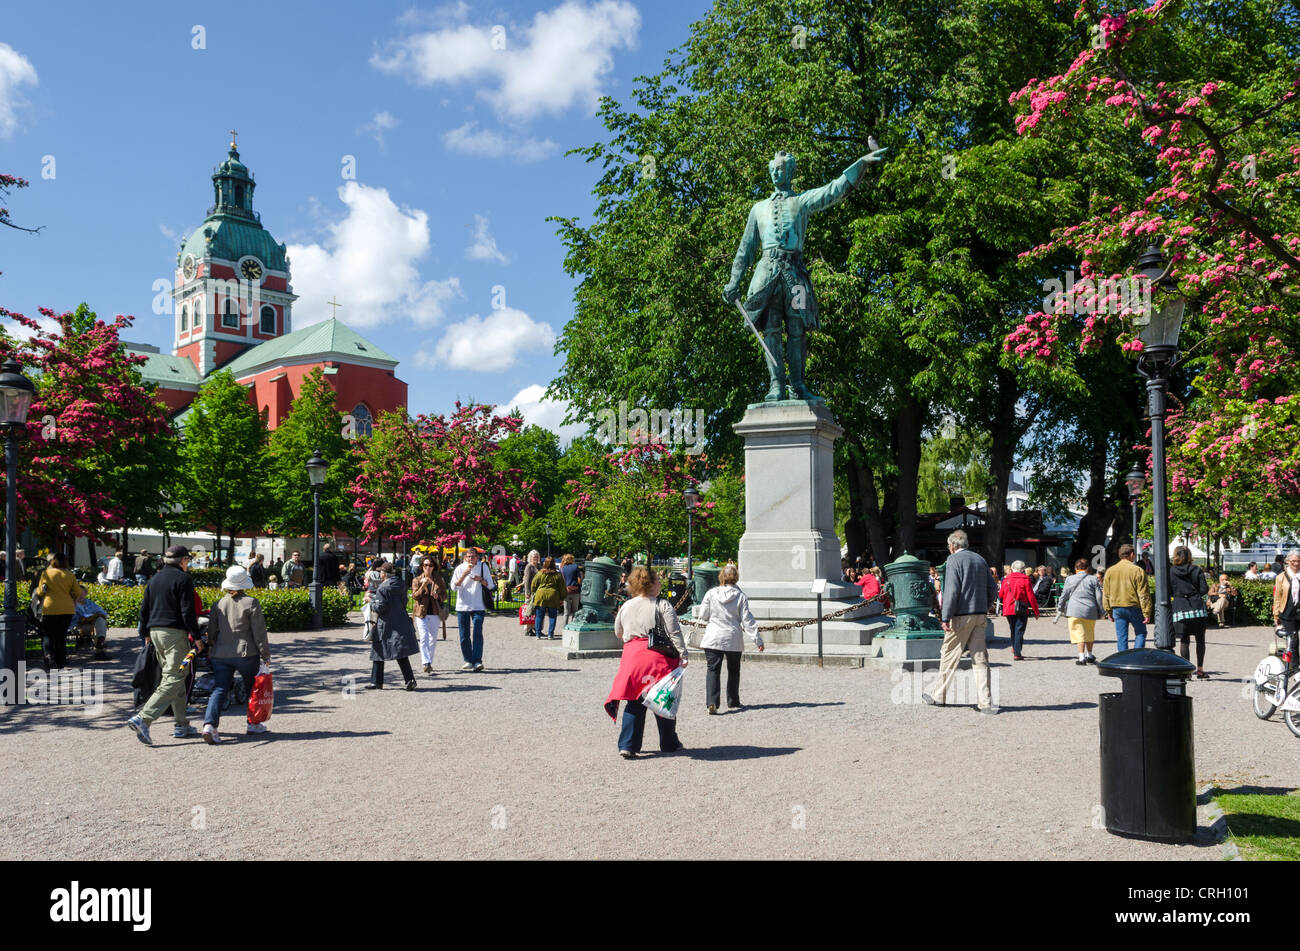 Stoccolma, Svezia: Kungstradgarden o il giardino del re, un parco urbano con la statua di Karl XII Foto Stock